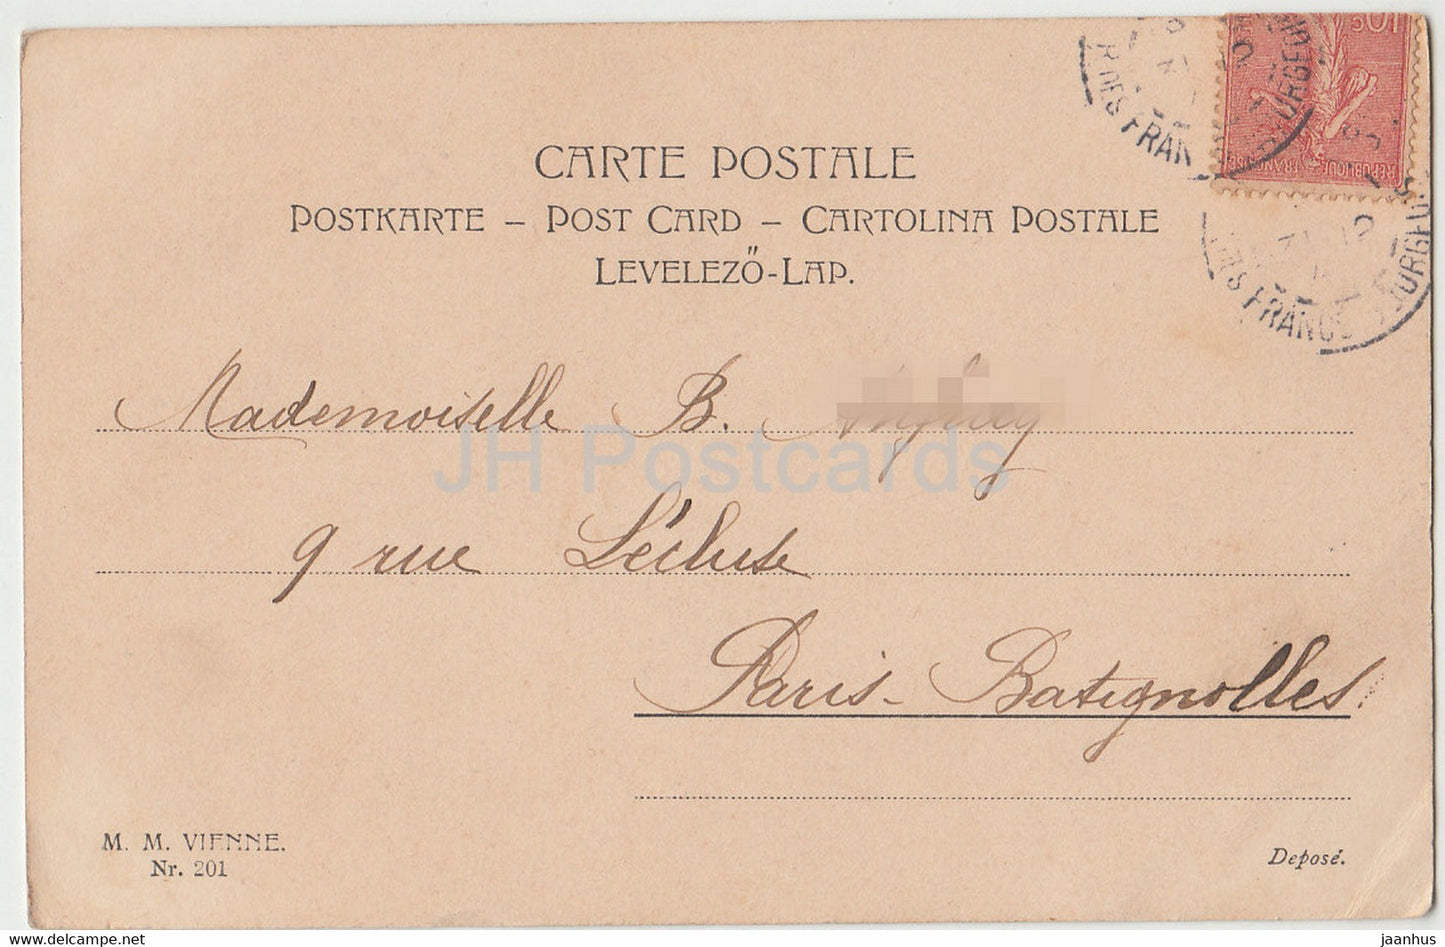 Geburtstagsgrußkarte - Bonne et Heureuse Annee - Blumen - 201 - MM Vienne - alte Postkarte 1904 - Frankreich - gebraucht